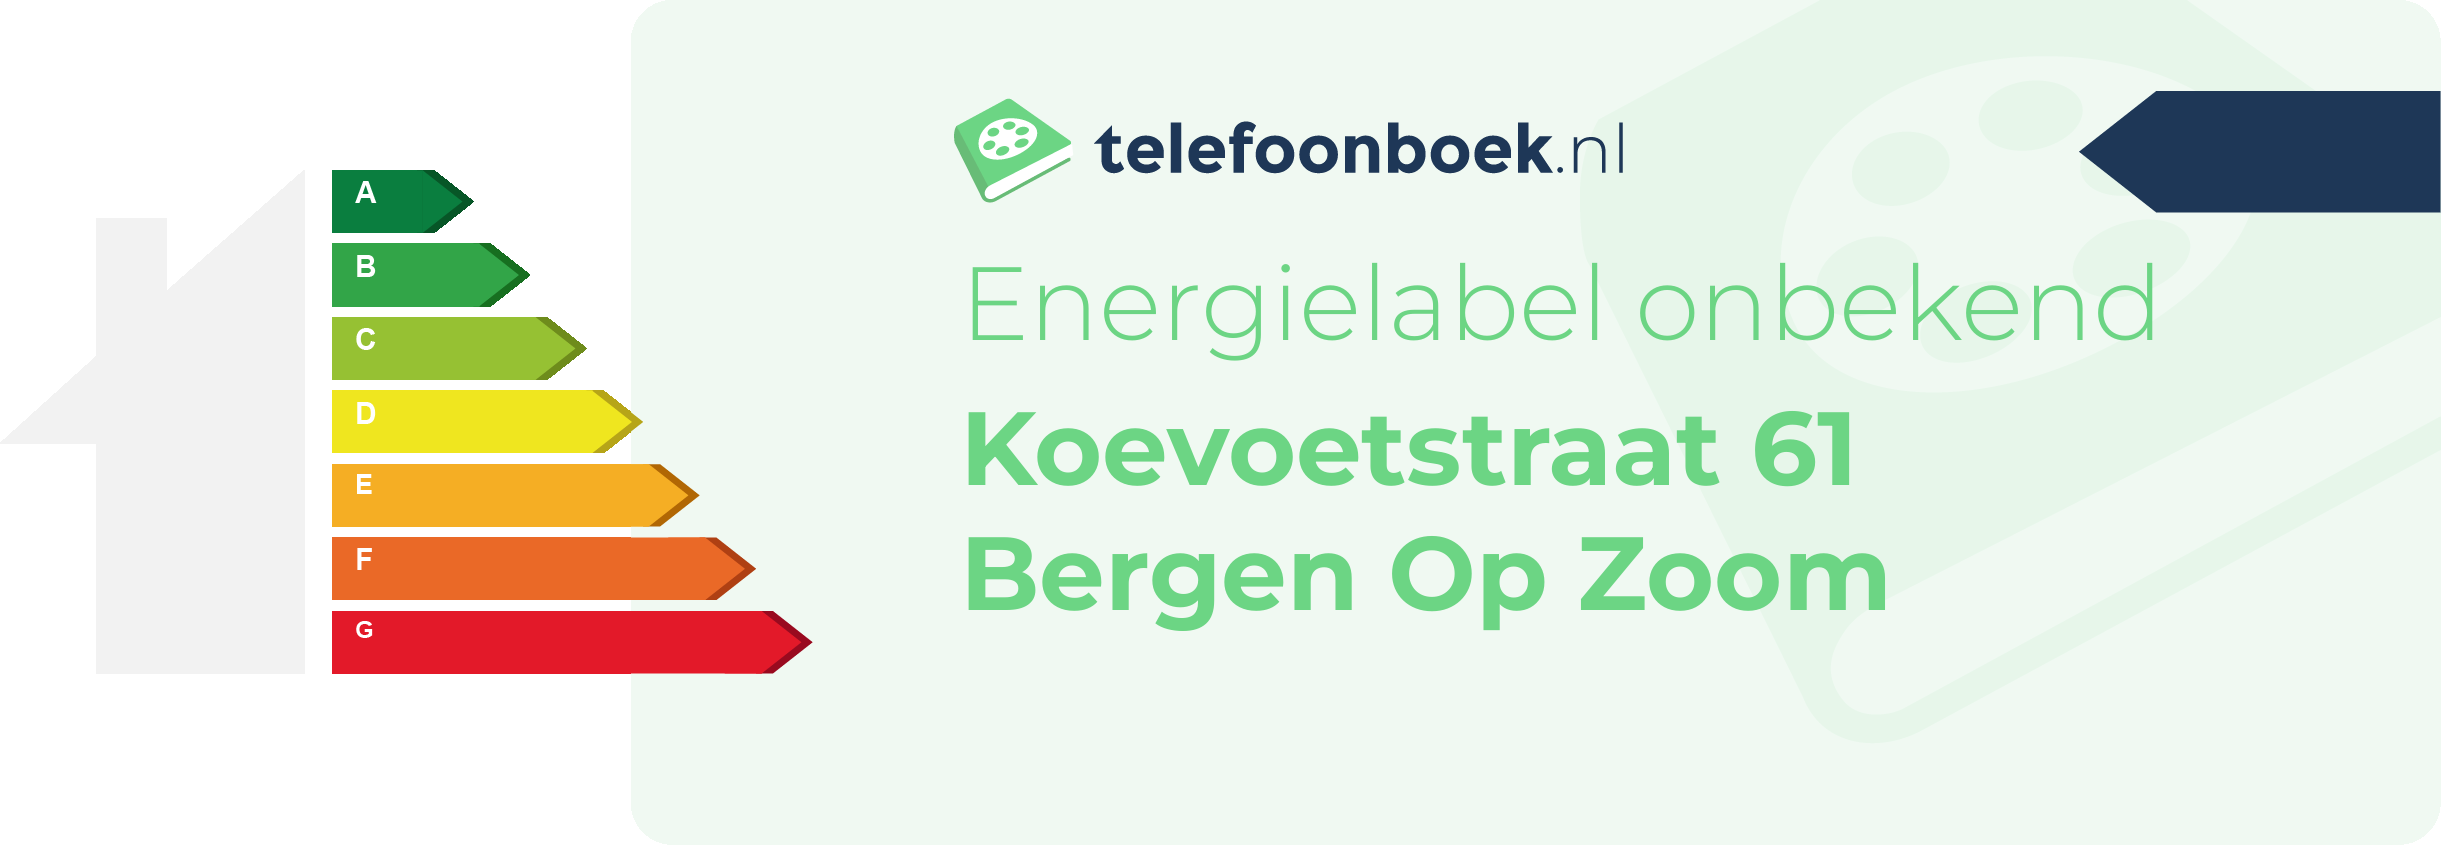 Energielabel Koevoetstraat 61 Bergen Op Zoom